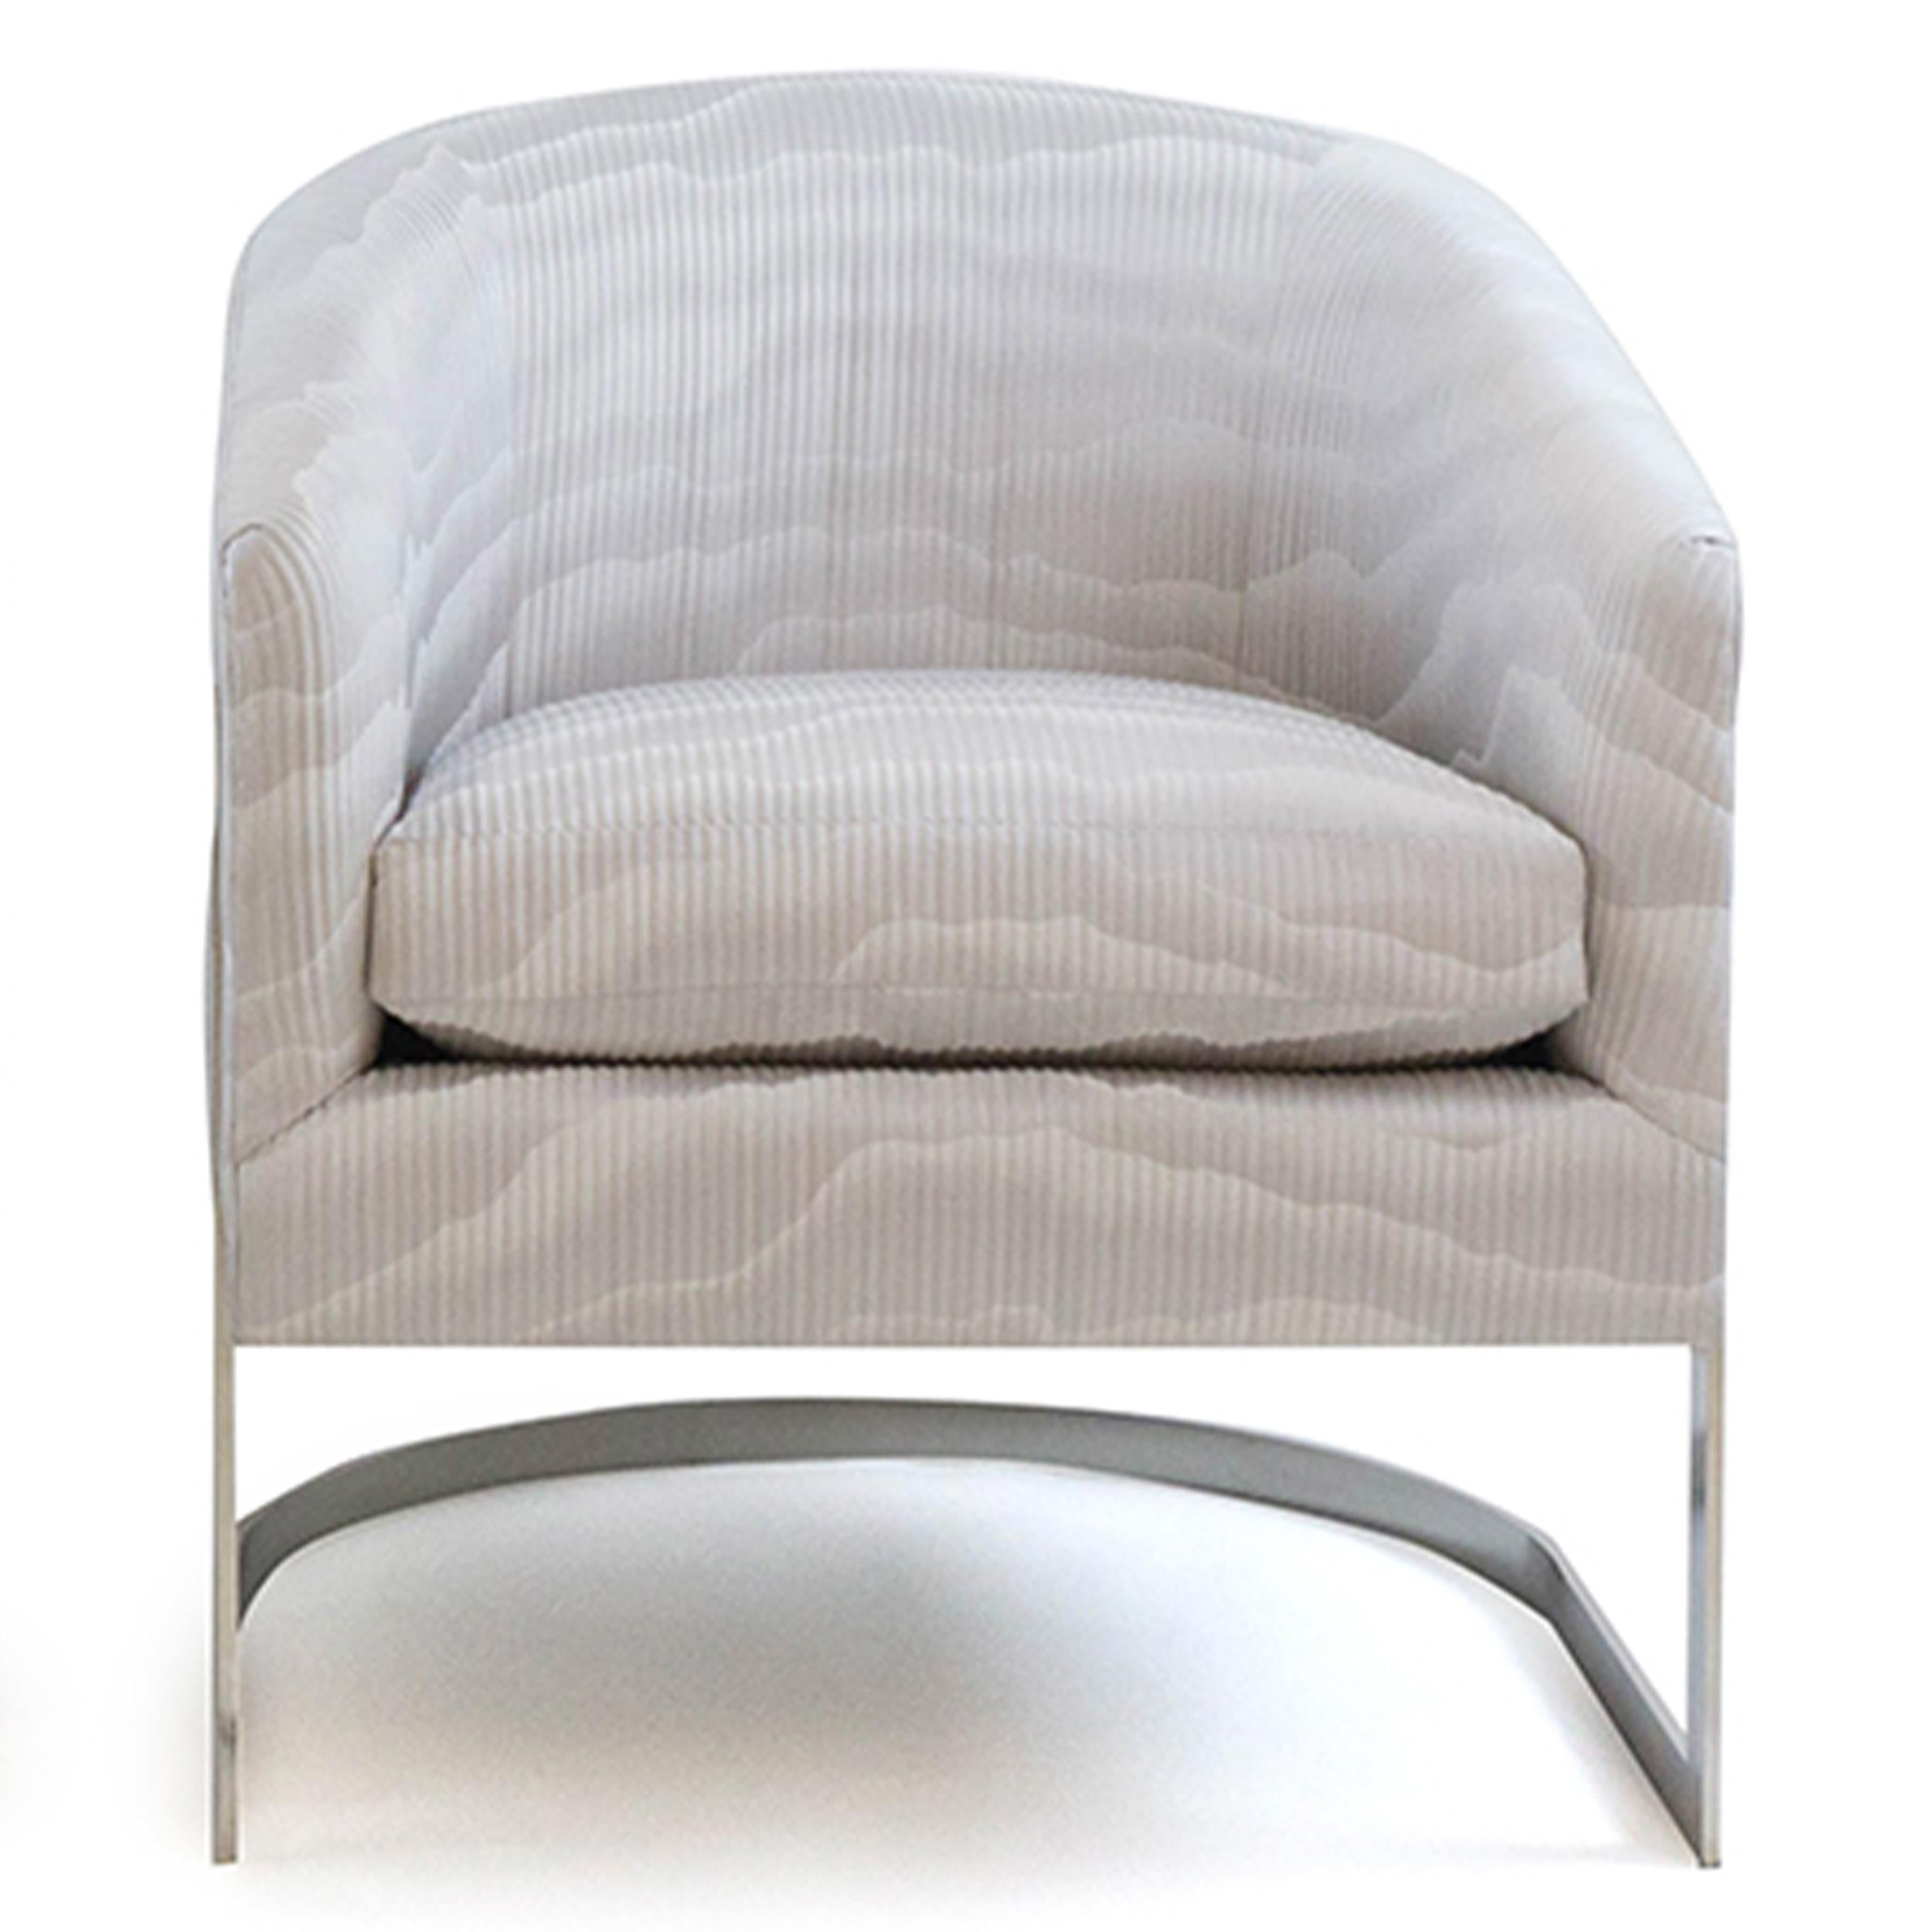 Cette chaise moderne à dossier incurvé et à armature en acier est revêtue d'un tissu gris à motifs ondulés multi-tonaux de Zinc textiles, inspiré d'un paysage japonais stylisé. De minces canaux dans le tissage lui confèrent une texture subtile. Le